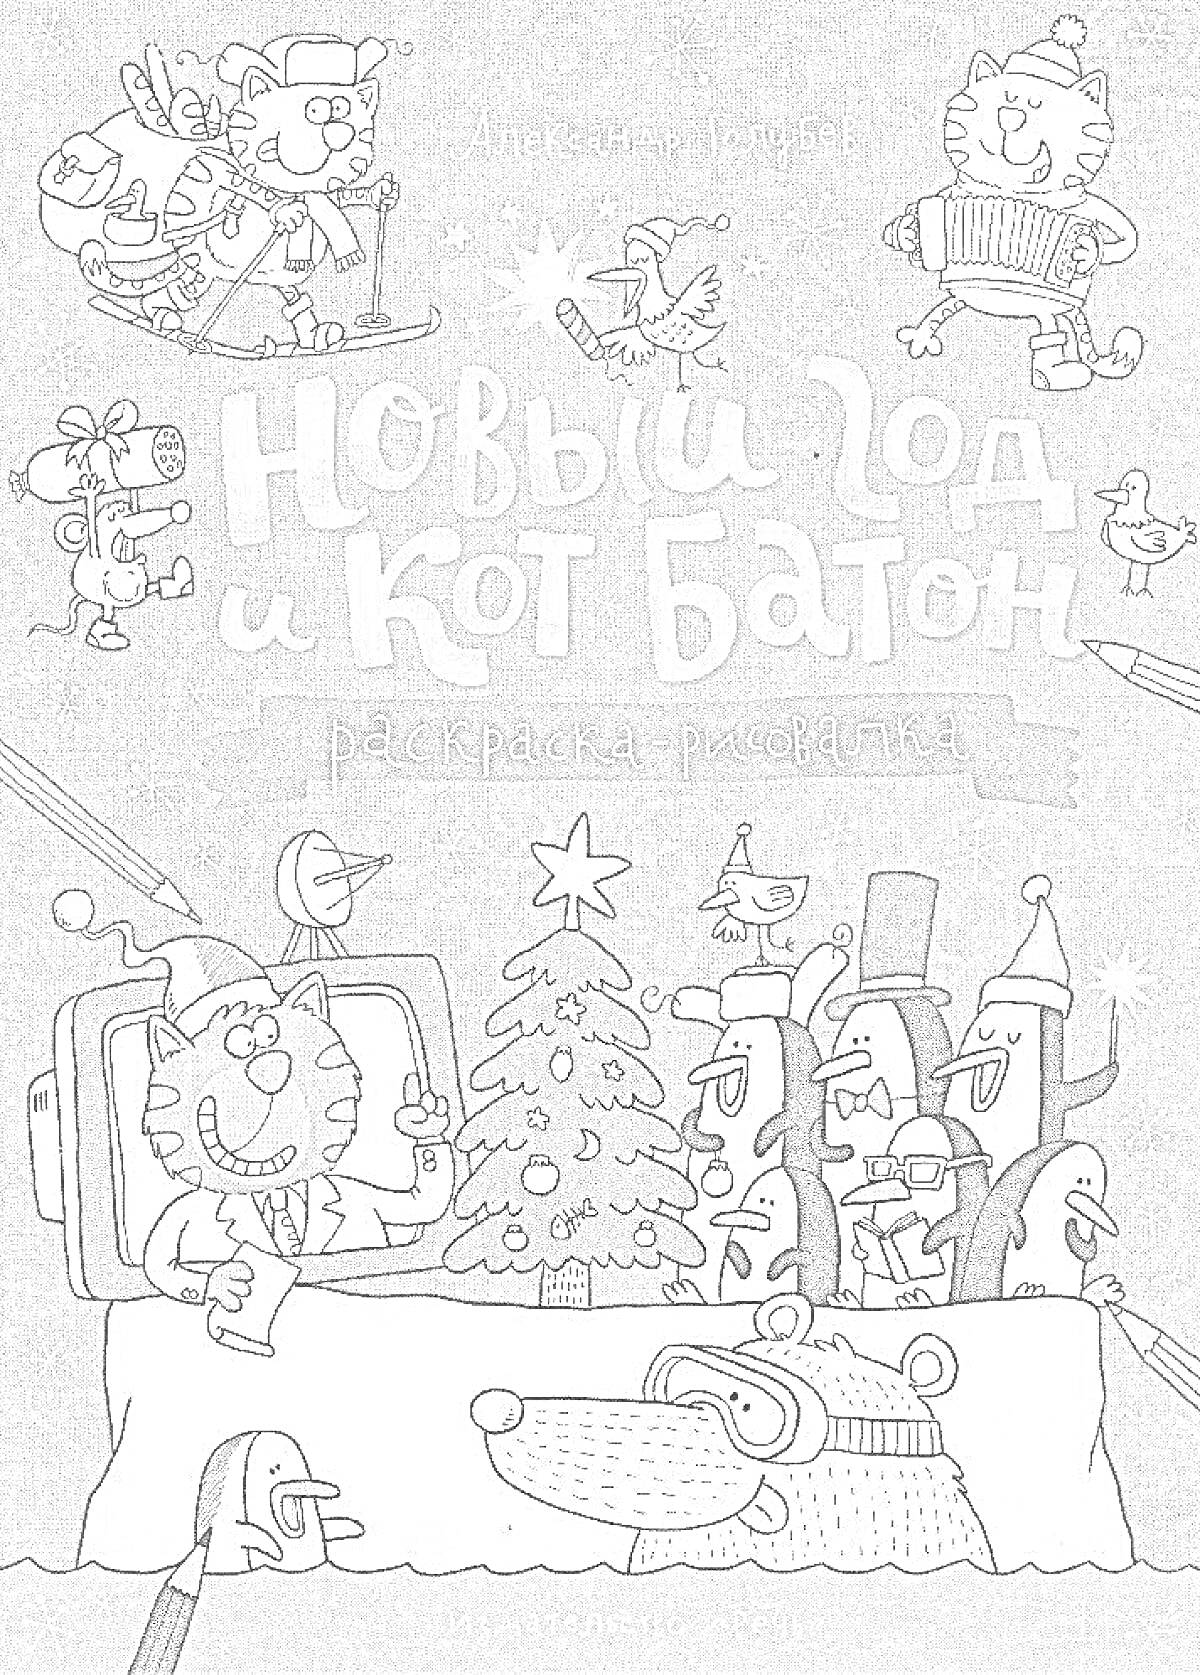 Новый год и Кот Батон. Раскраска-рисовалка. На изображении: коты, новогодняя ёлка, костюм деда мороза, подарки, музыкальные инструменты, снегирь, персонажи вокруг стола.